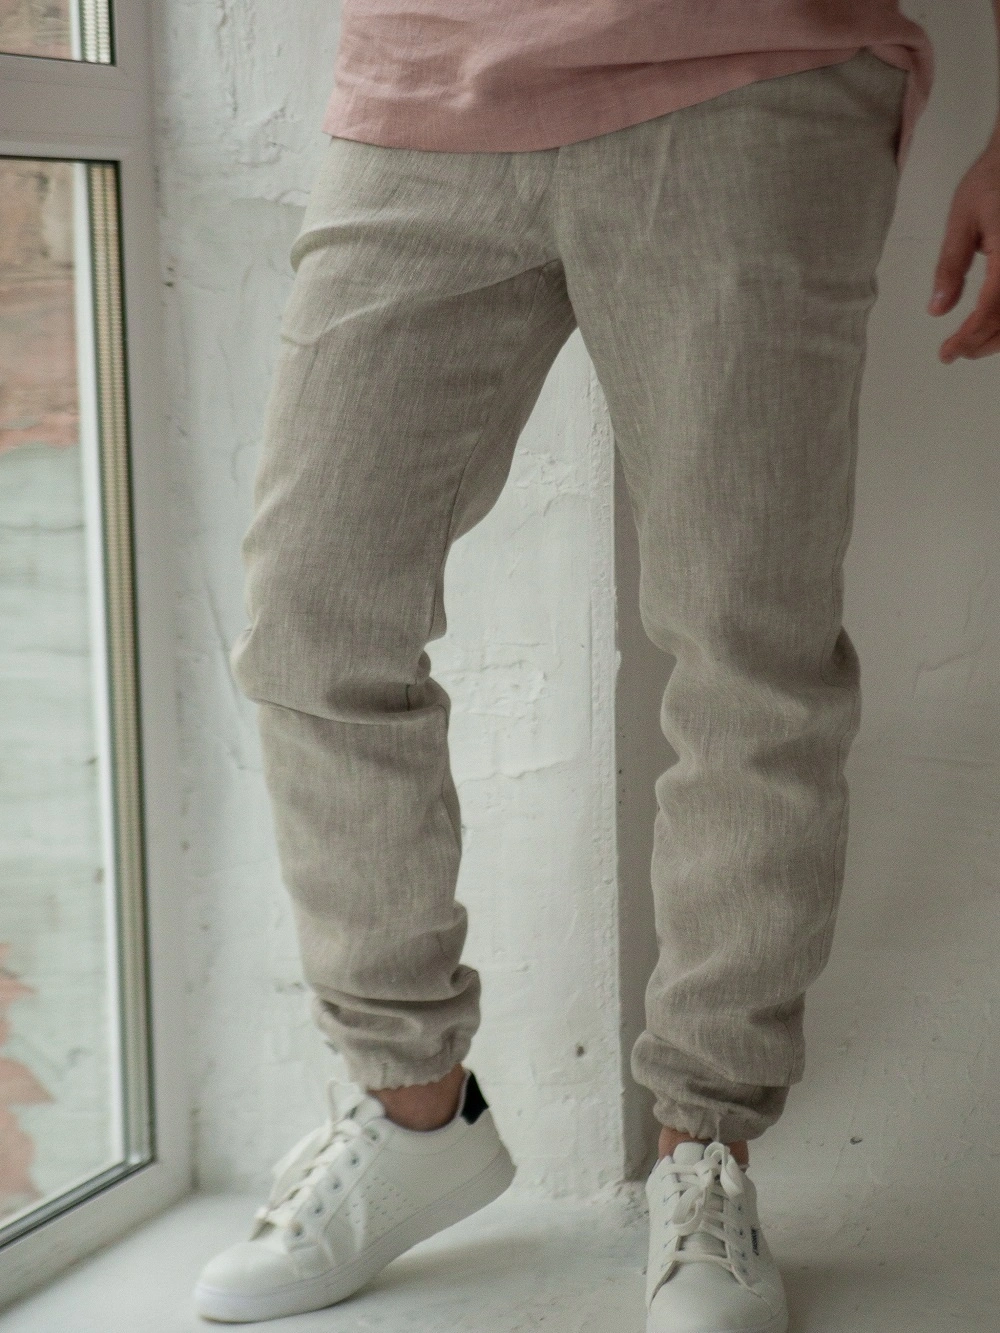 Белые мужские брюки, льняные белые штаны - купить в магазине «ИзоЛьна.ру»